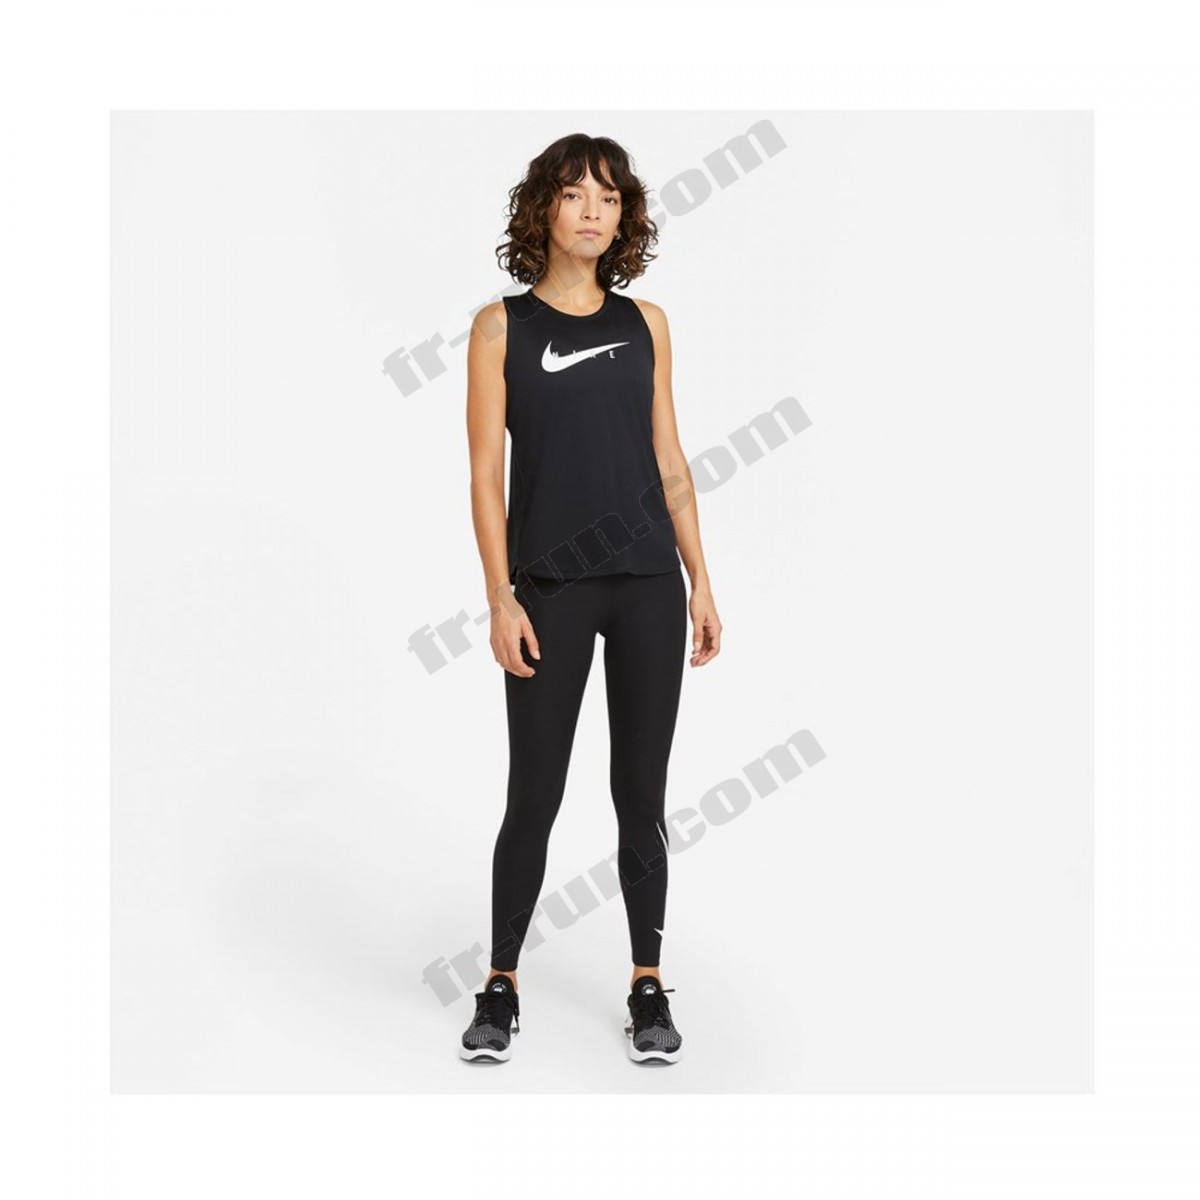 Nike/running femme NIKE Nike Wmns Swoosh Run Top ◇◇◇ Pas Cher Du Tout - -2